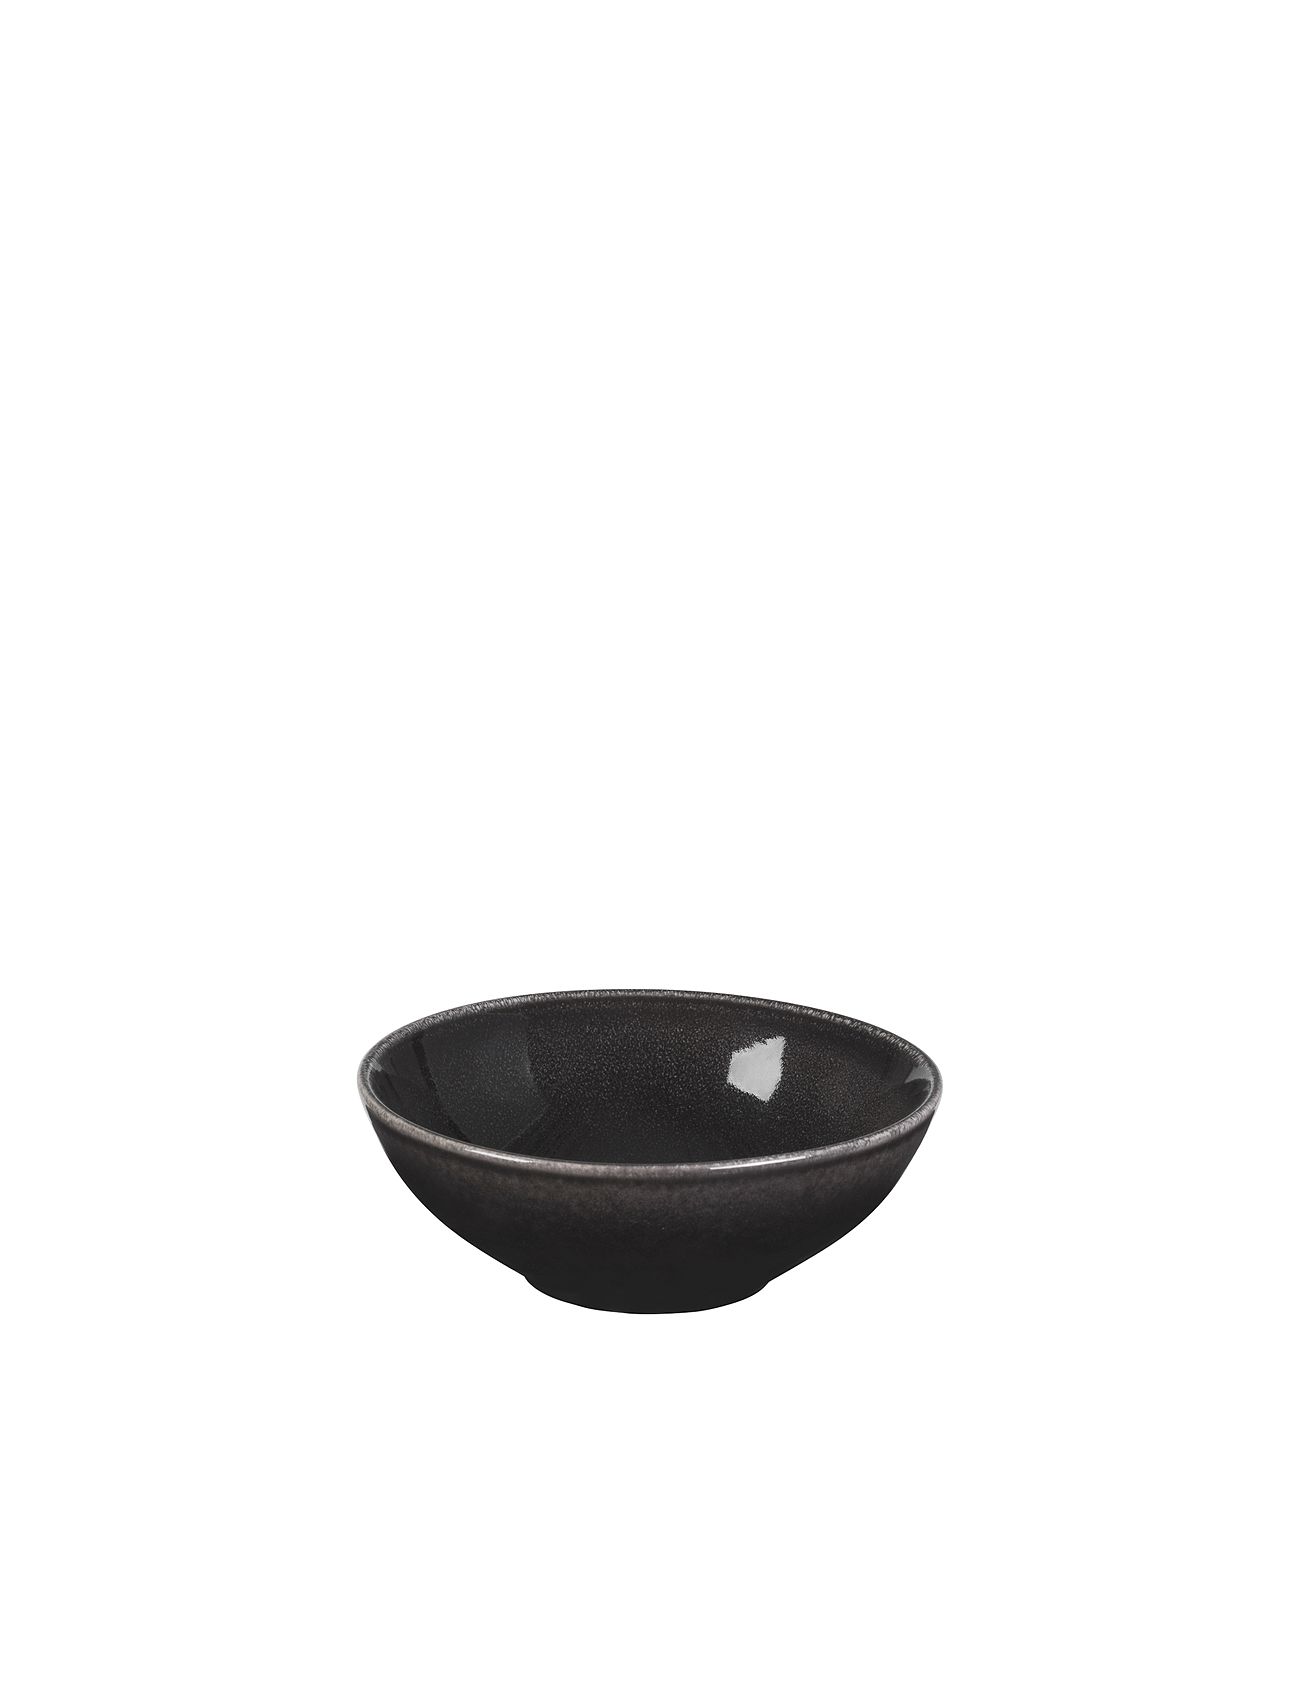 Skål 'Nordic Coal' Stentøj Home Tableware Bowls & Serving Dishes Serving Bowls Grey Broste Copenhagen